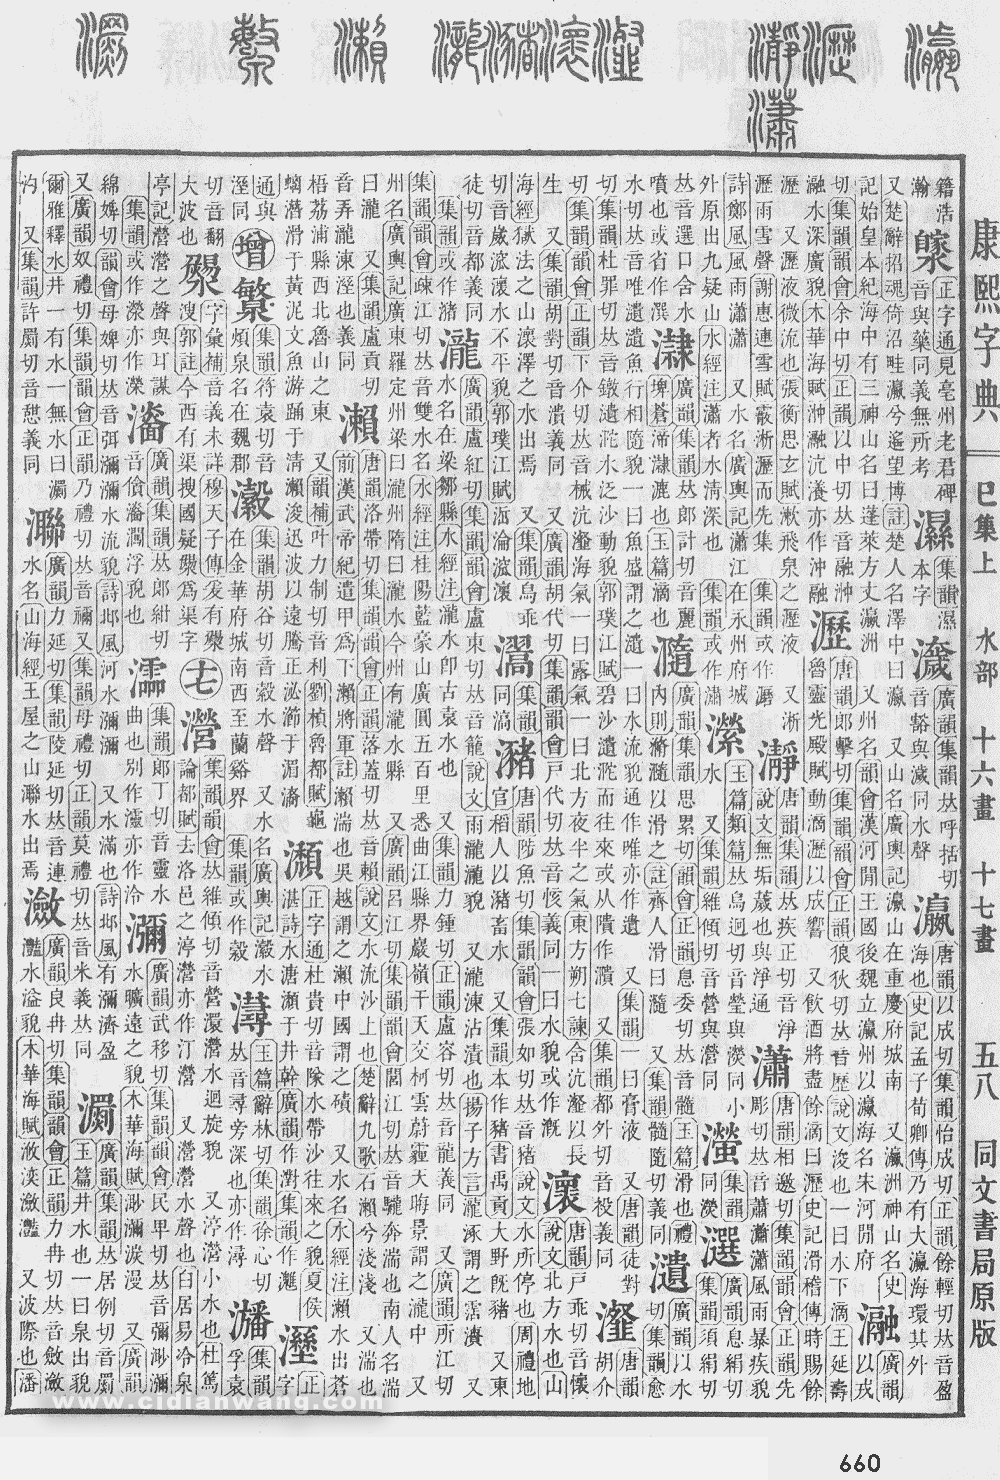 康熙字典掃描版第660頁